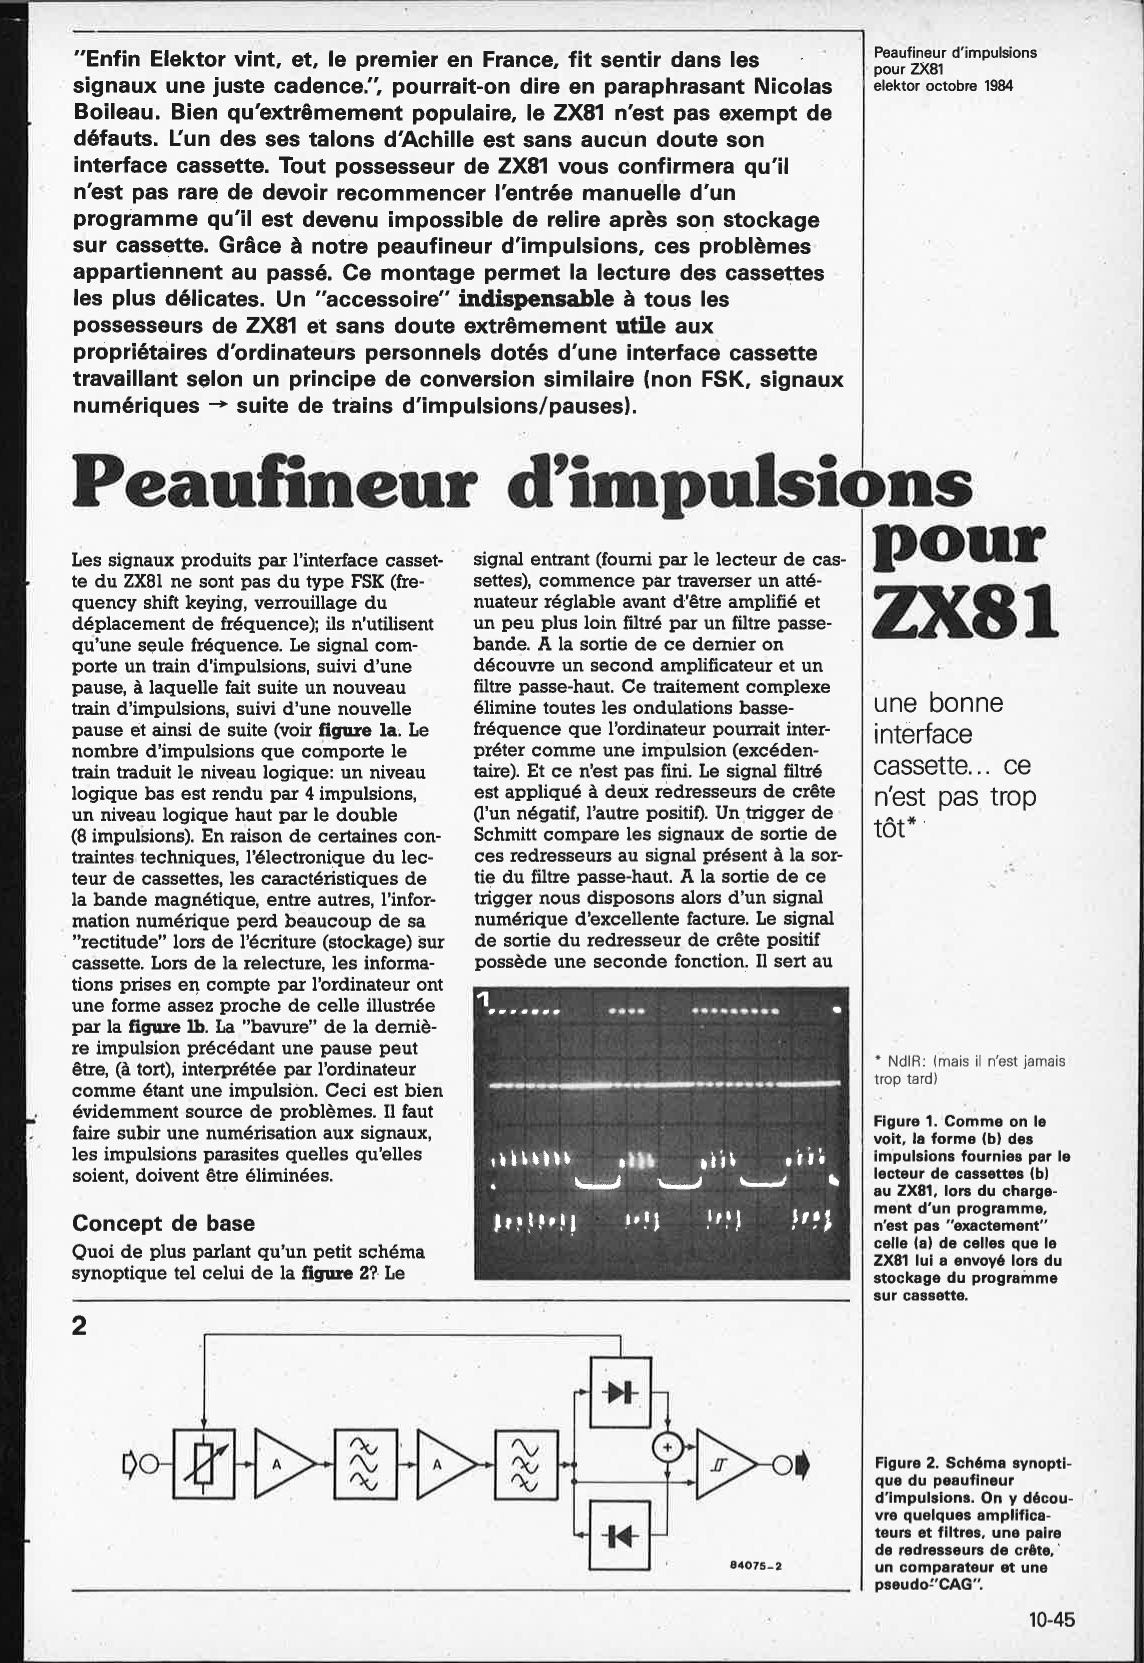 Peaufineur d`impulsions pour ZX81